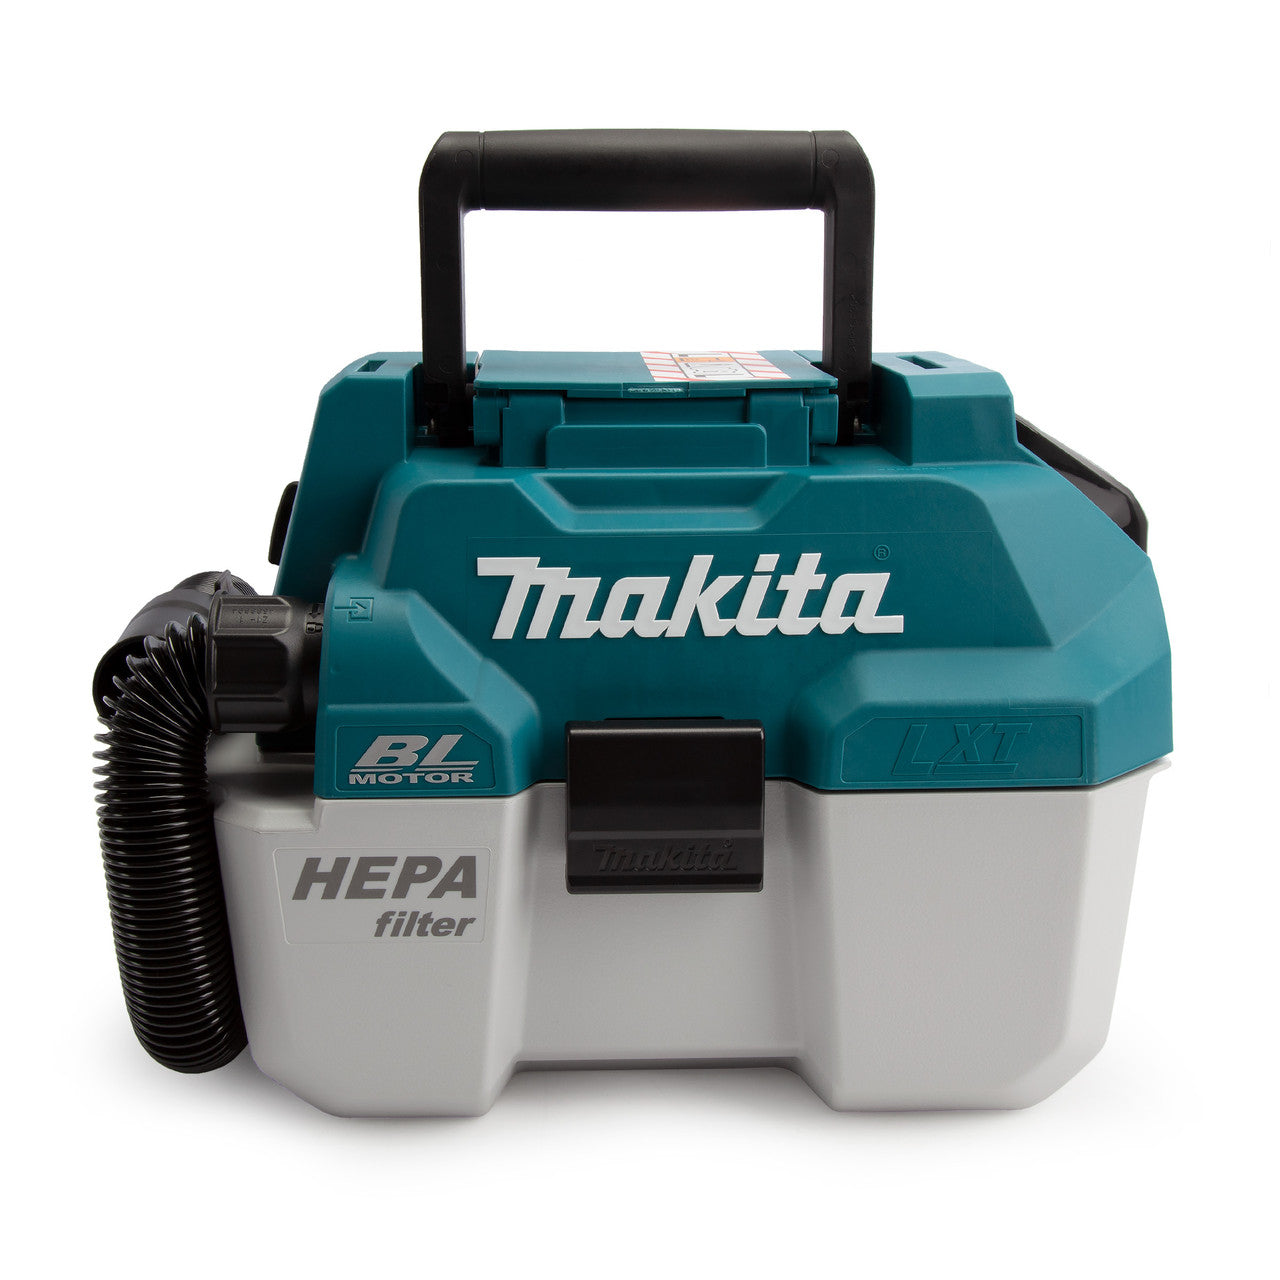 Makita DVC750LZ 18V LXT Brushless Vacuum Cleaner (Body Only)